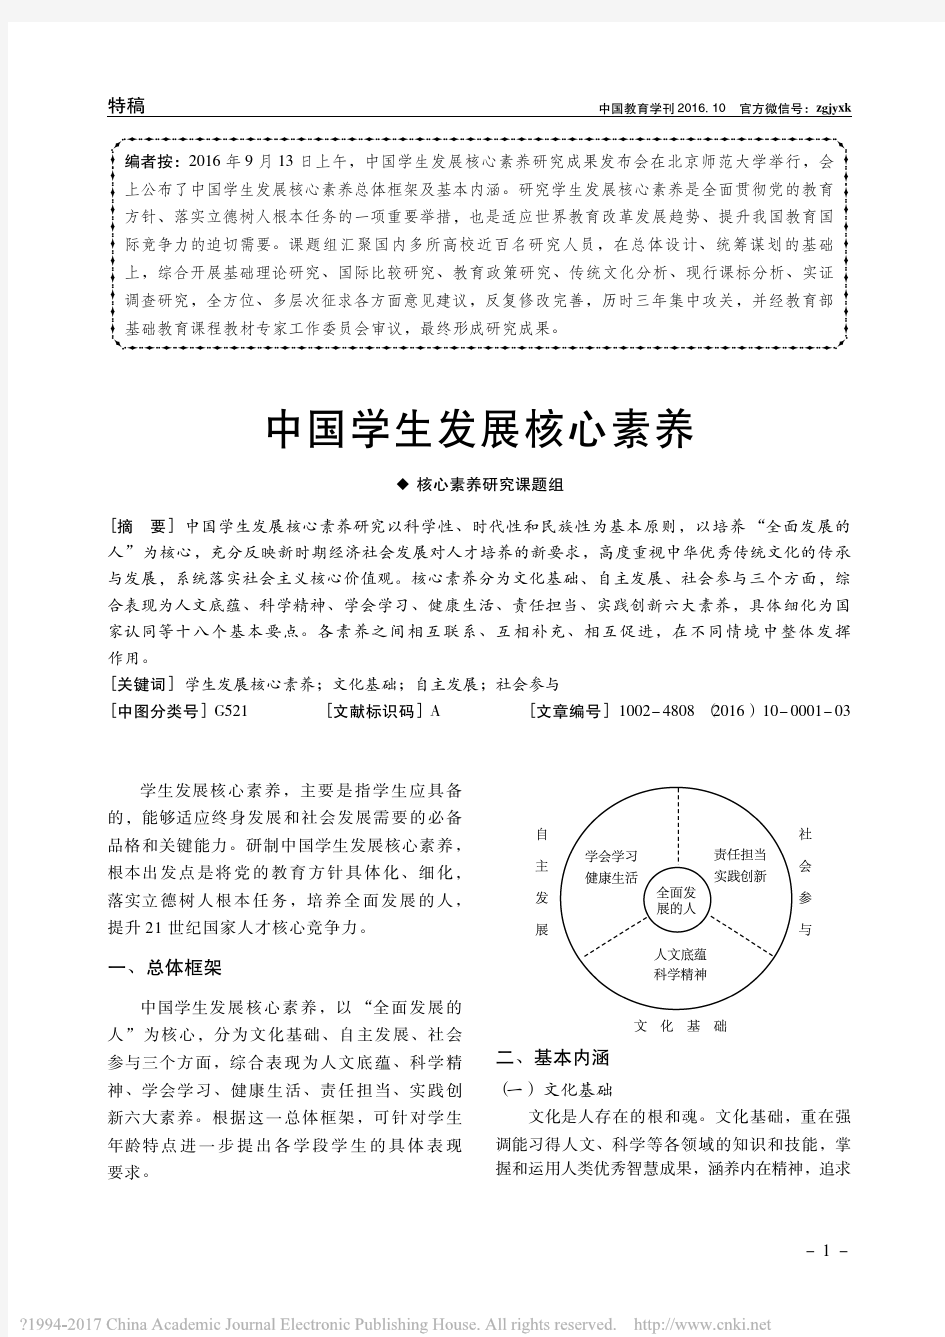 中国学生发展核心素养_核心素养研究课题组